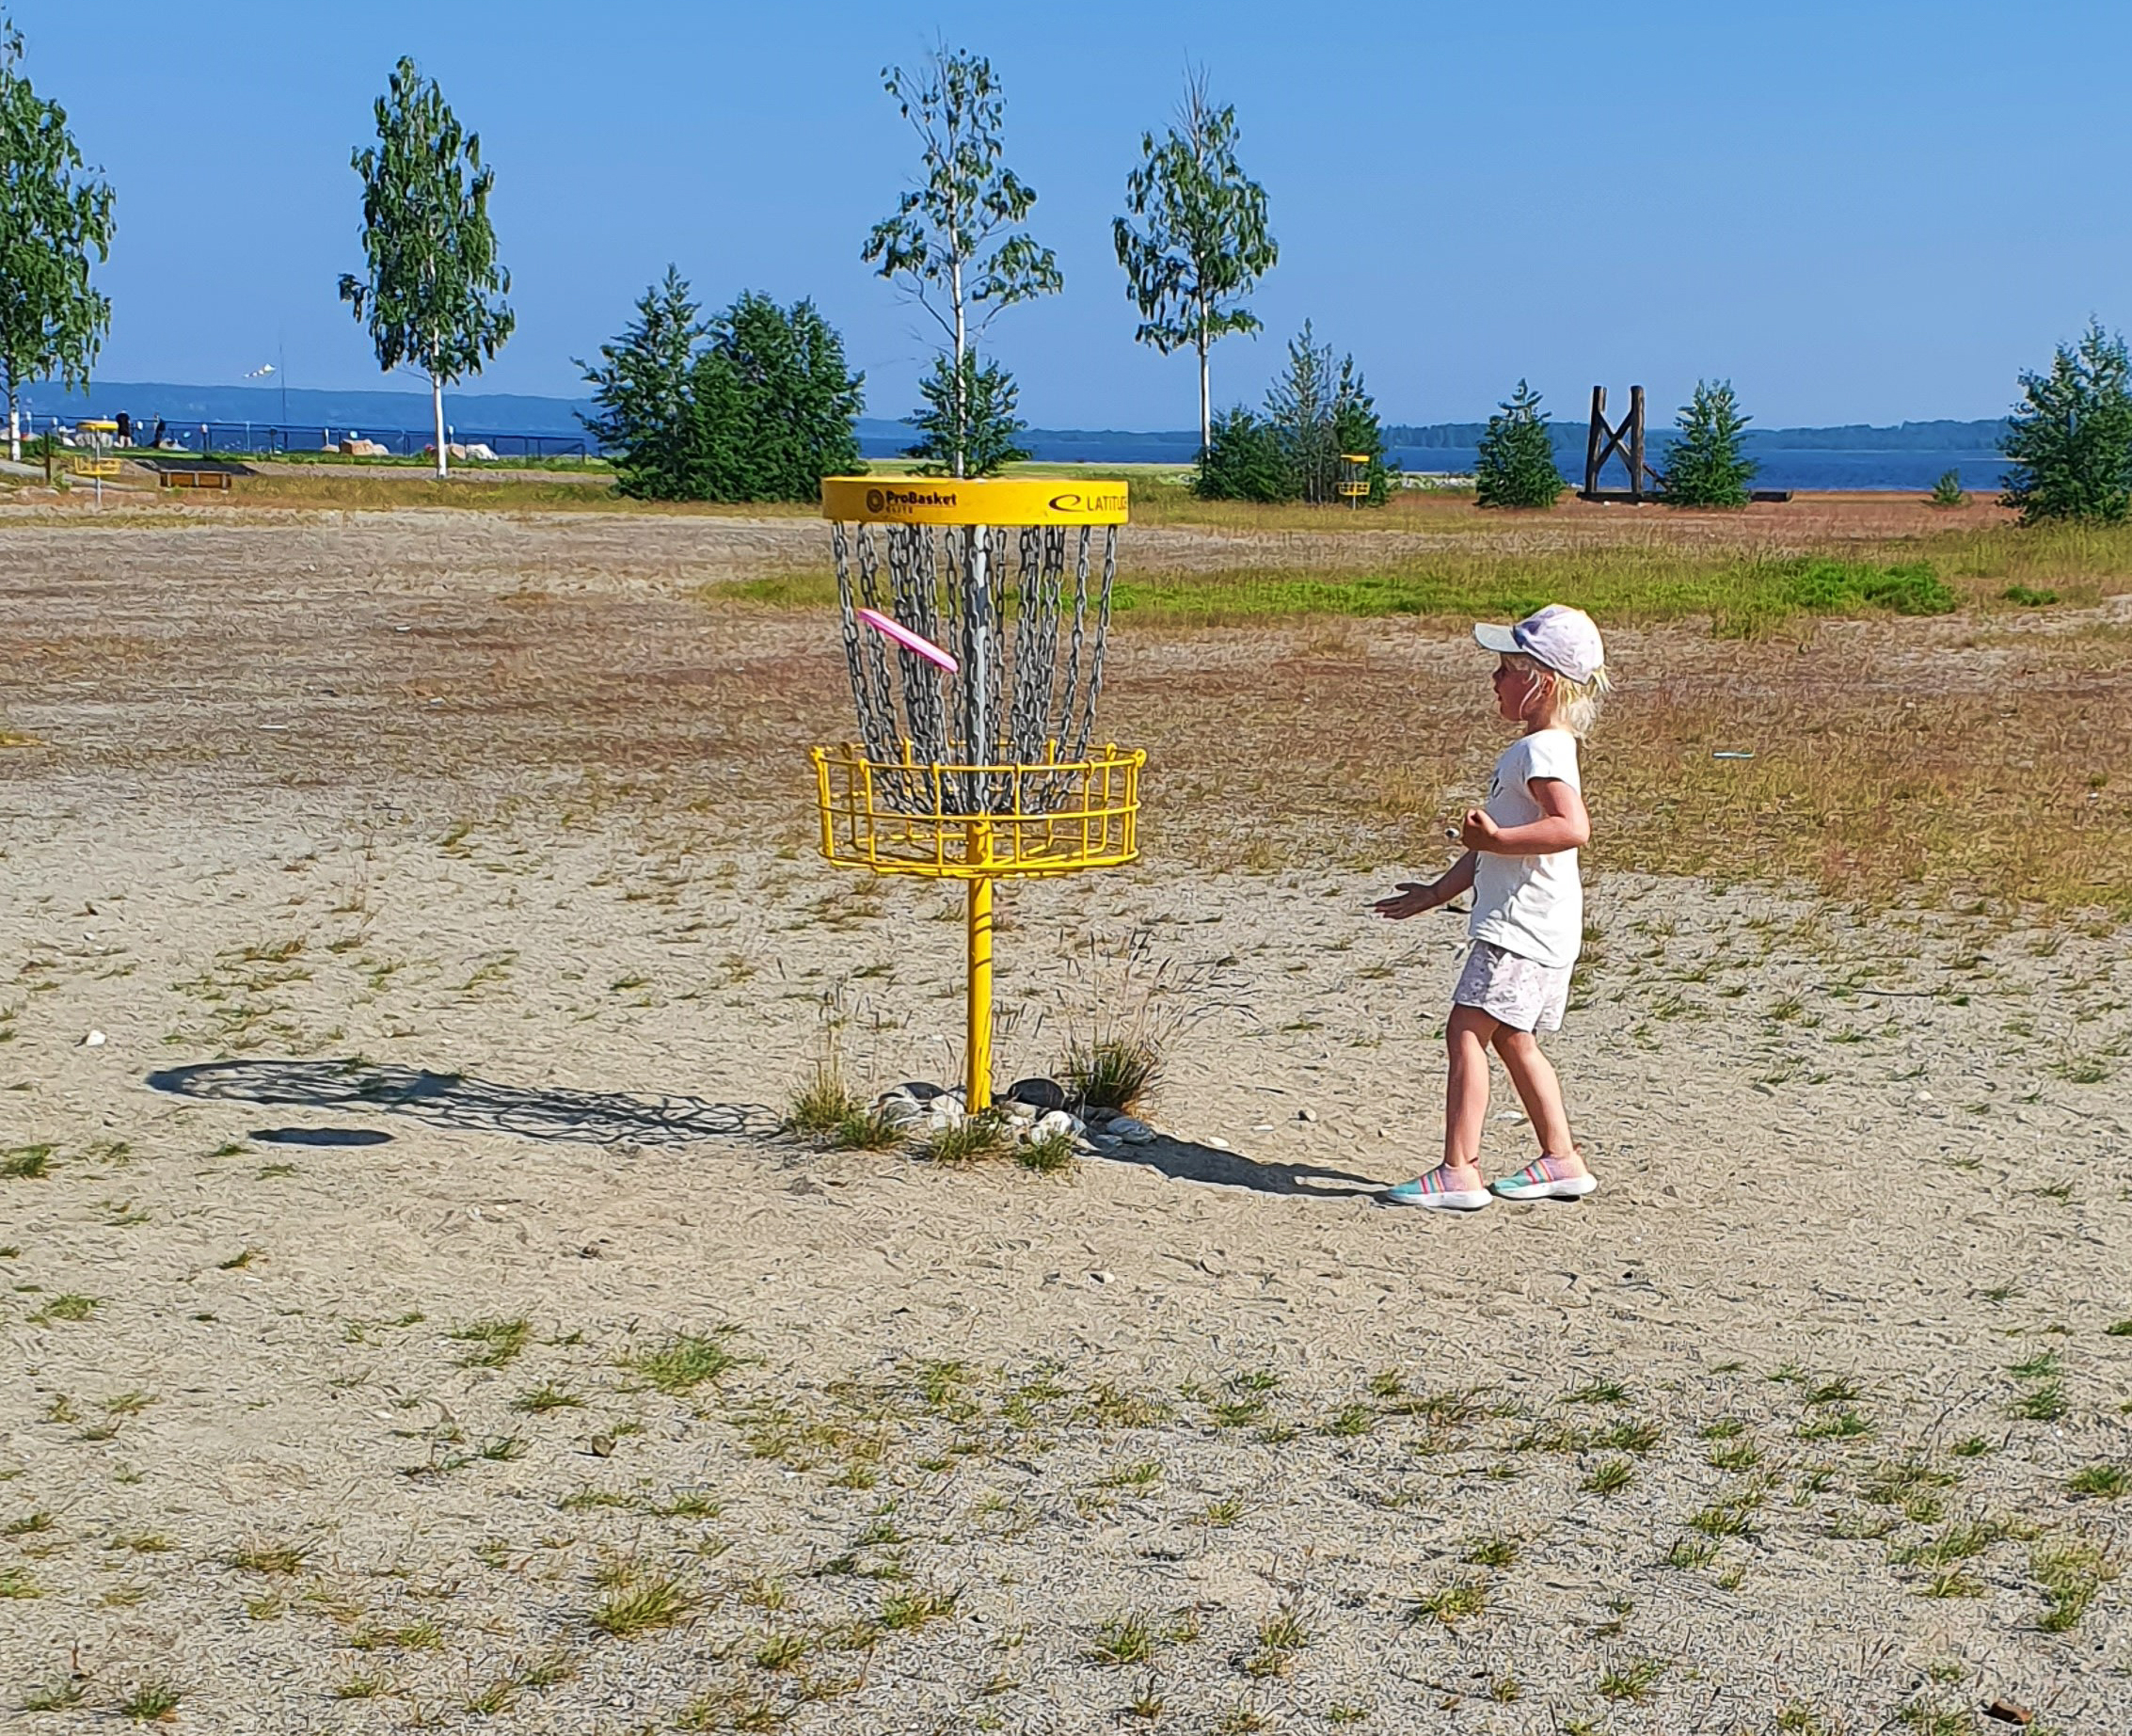 En flicka kastar iväg sin frisbee mot en gul metallkorg. Den sitter och hon har klarat av hålet.